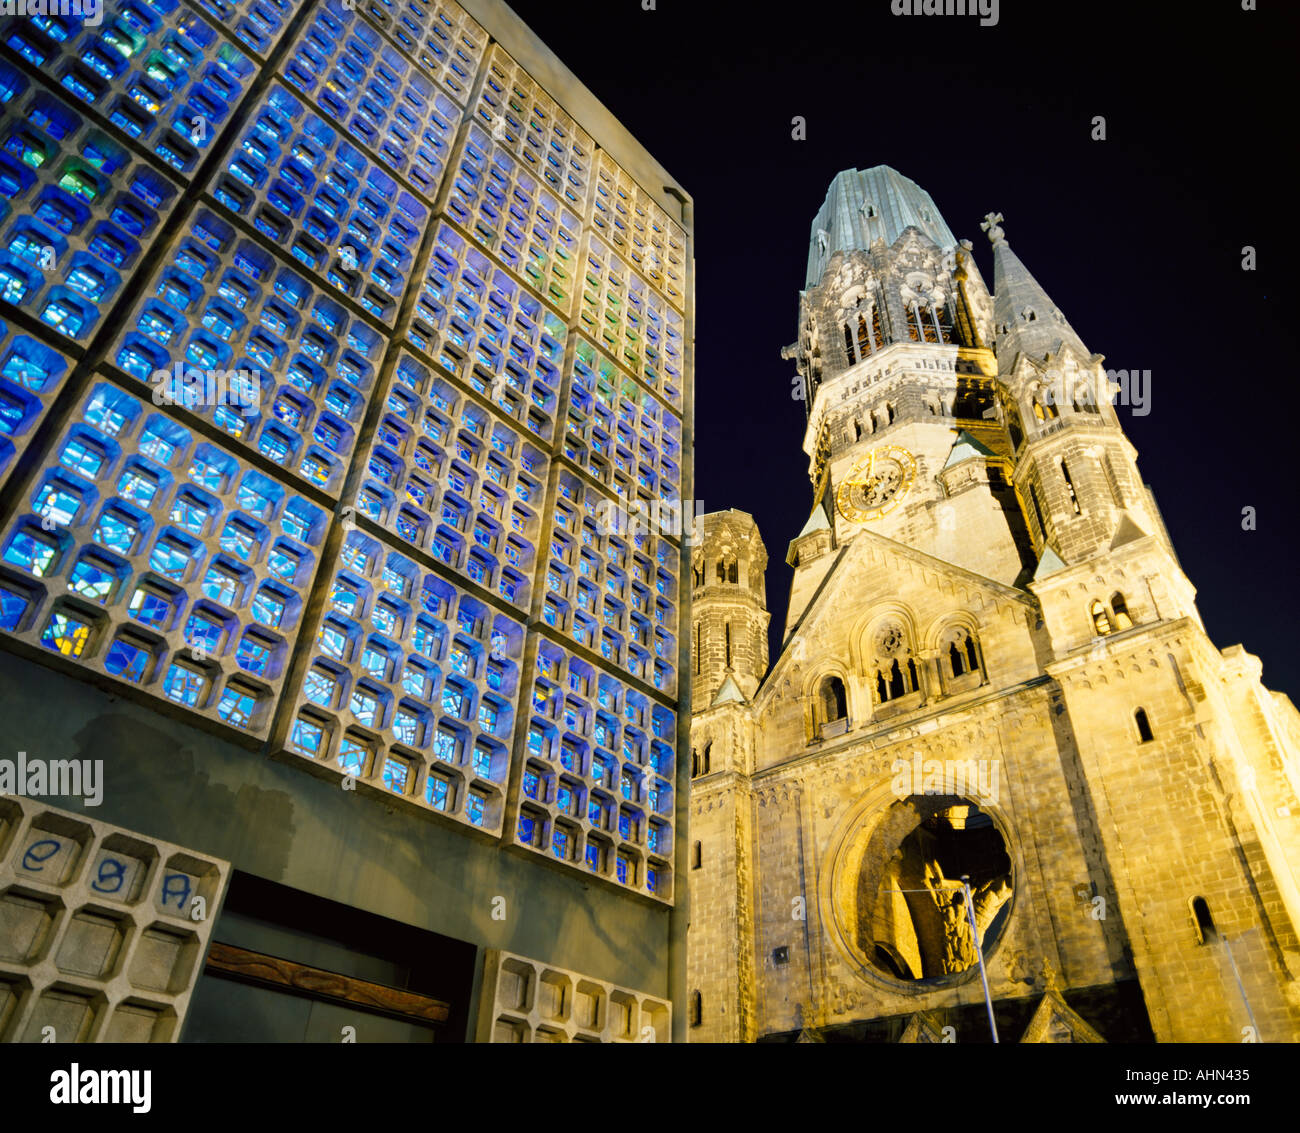 Kaiser wilhelm church and berlin sculpture Berlin Stock Photo